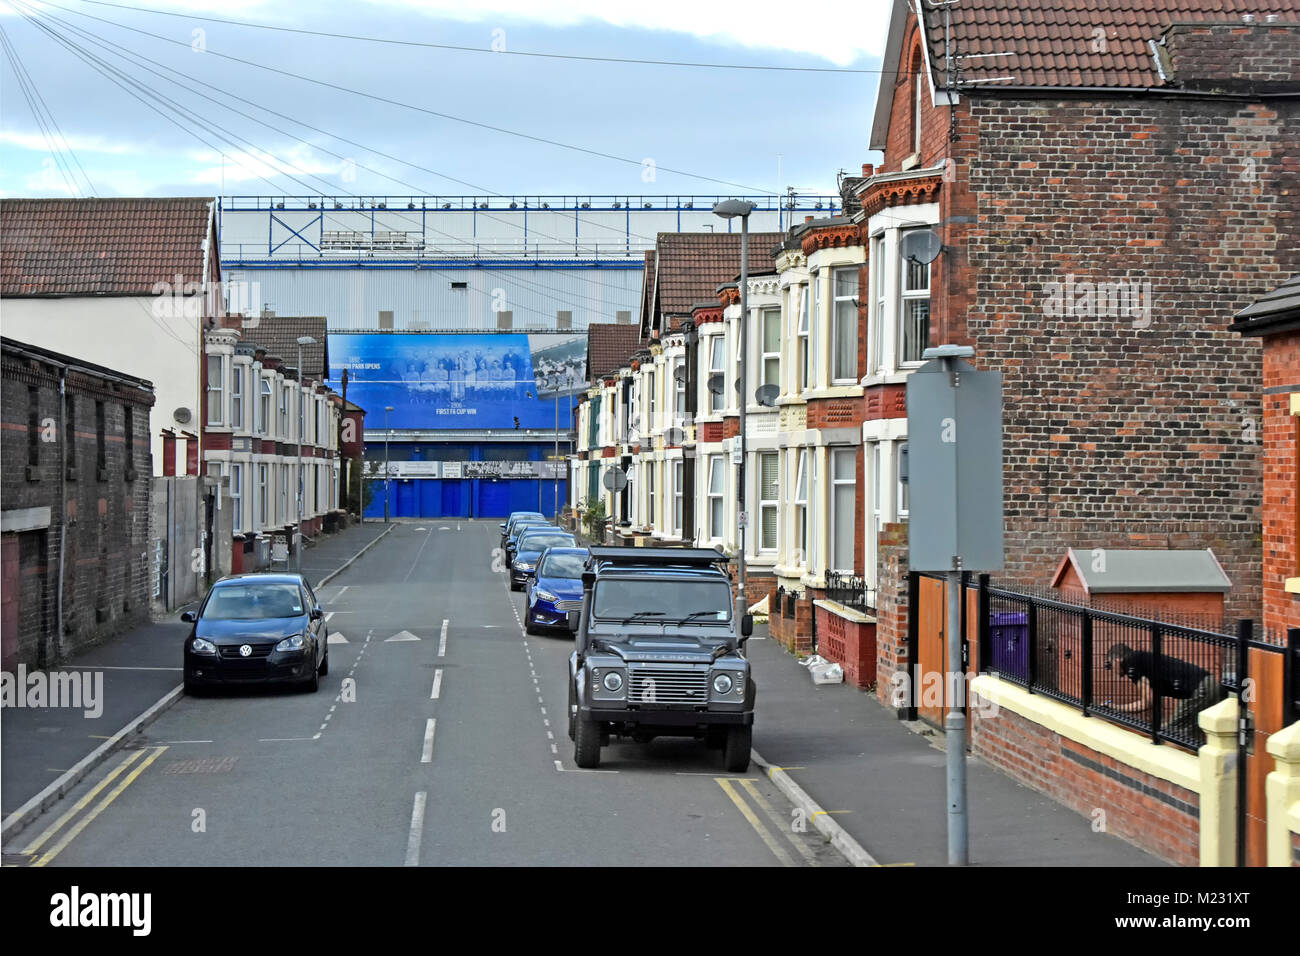 Wohnstraße der Reihenhäuser mit verkehrsberuhigung Höcker & Everton Football Club Goodison Park Stadion am Ende der Straße Liverpool England Großbritannien Stockfoto